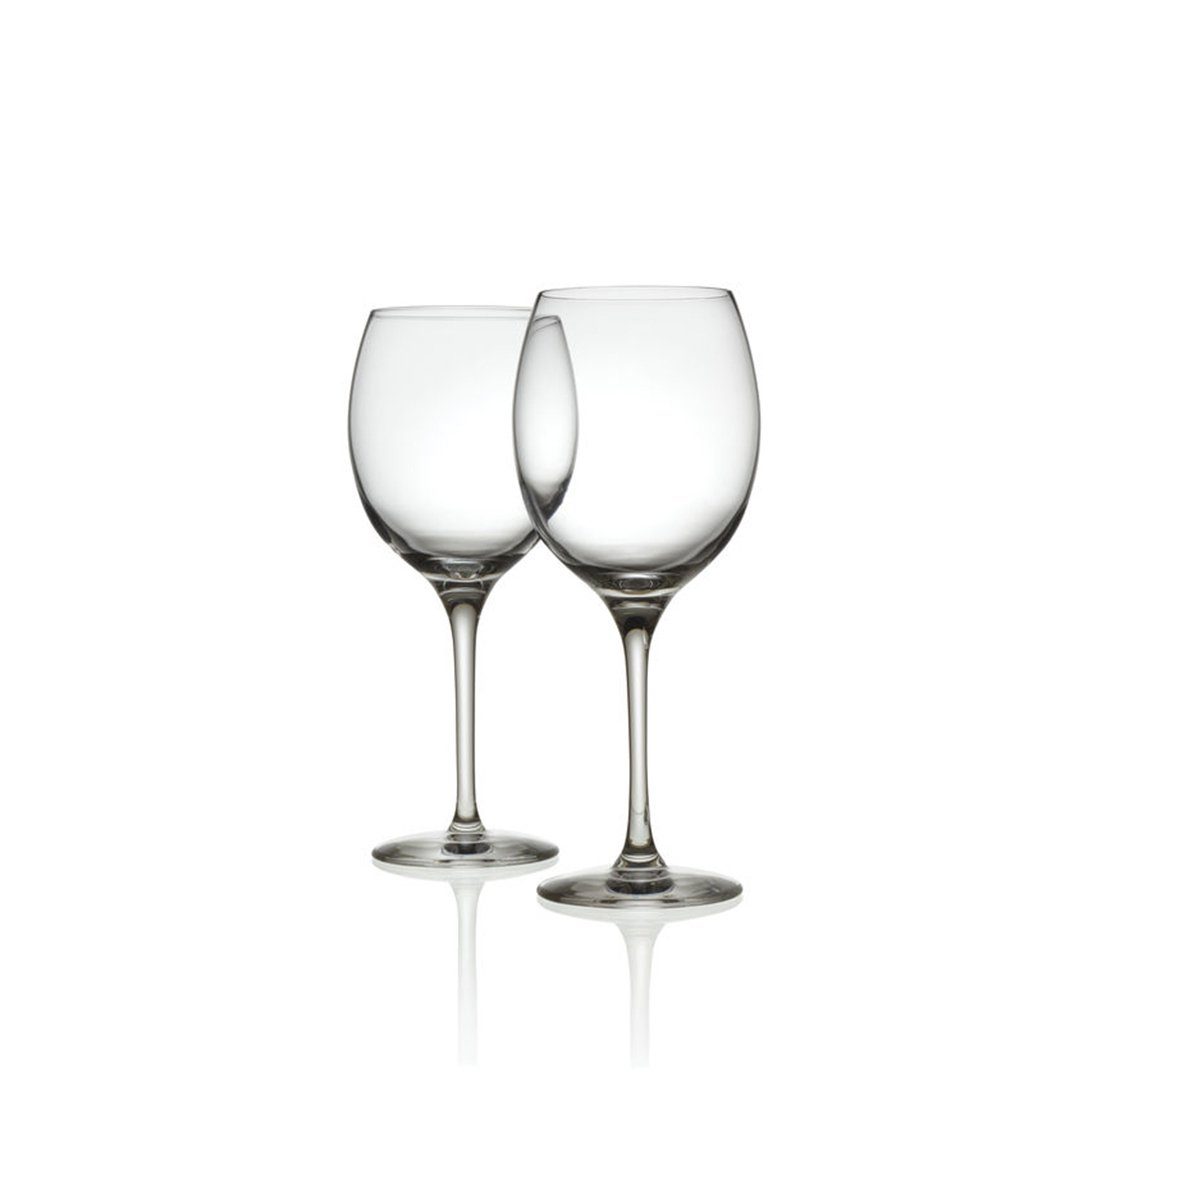 Alessi ALESSI Weißweinglas Mami XL 2er Set kaufen | OTTO